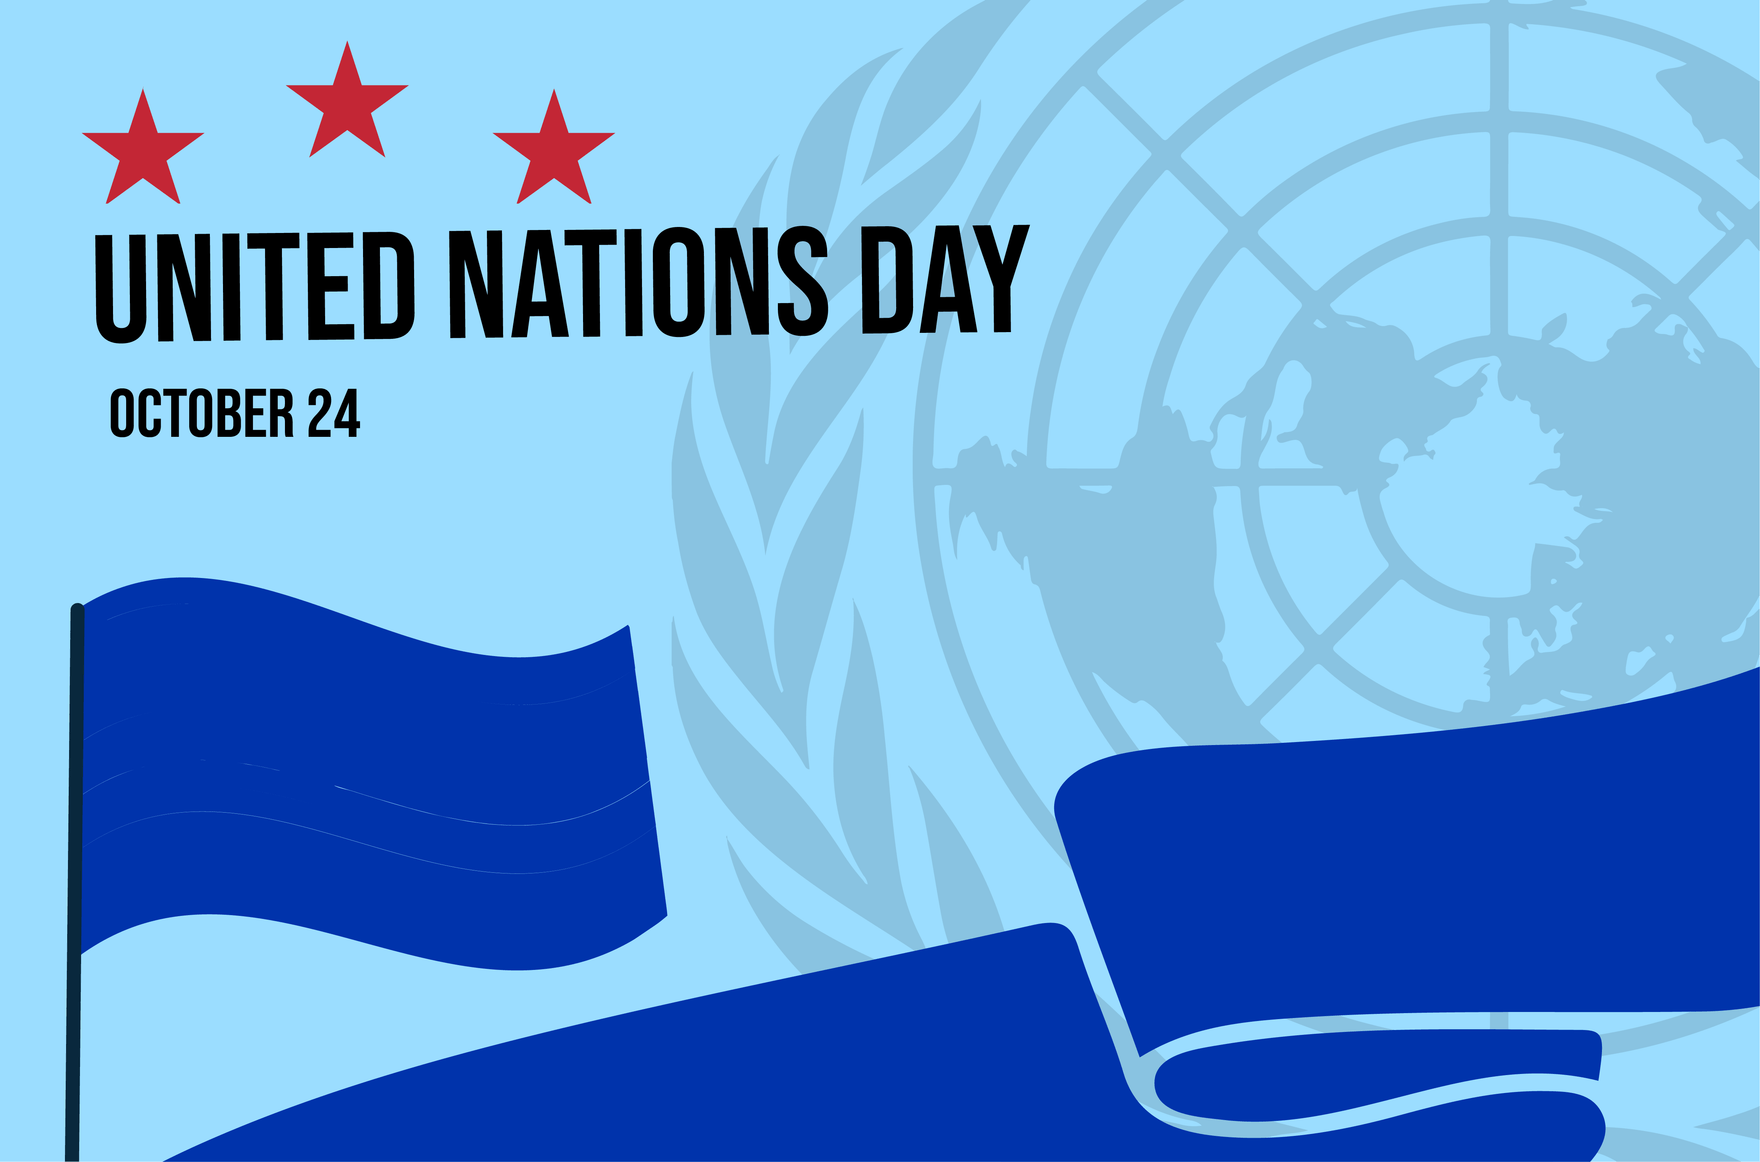 Ngày Liên Hợp Quốc mang ý nghĩa rất đặc biệt và quan trọng đối với toàn thế giới. Hãy cùng đón xem hình ảnh liên quan để hiểu thêm về sứ mệnh và thành tựu của tổ chức quốc tế này, giúp đưa thế giới hòa bình và phát triển bền vững hơn.